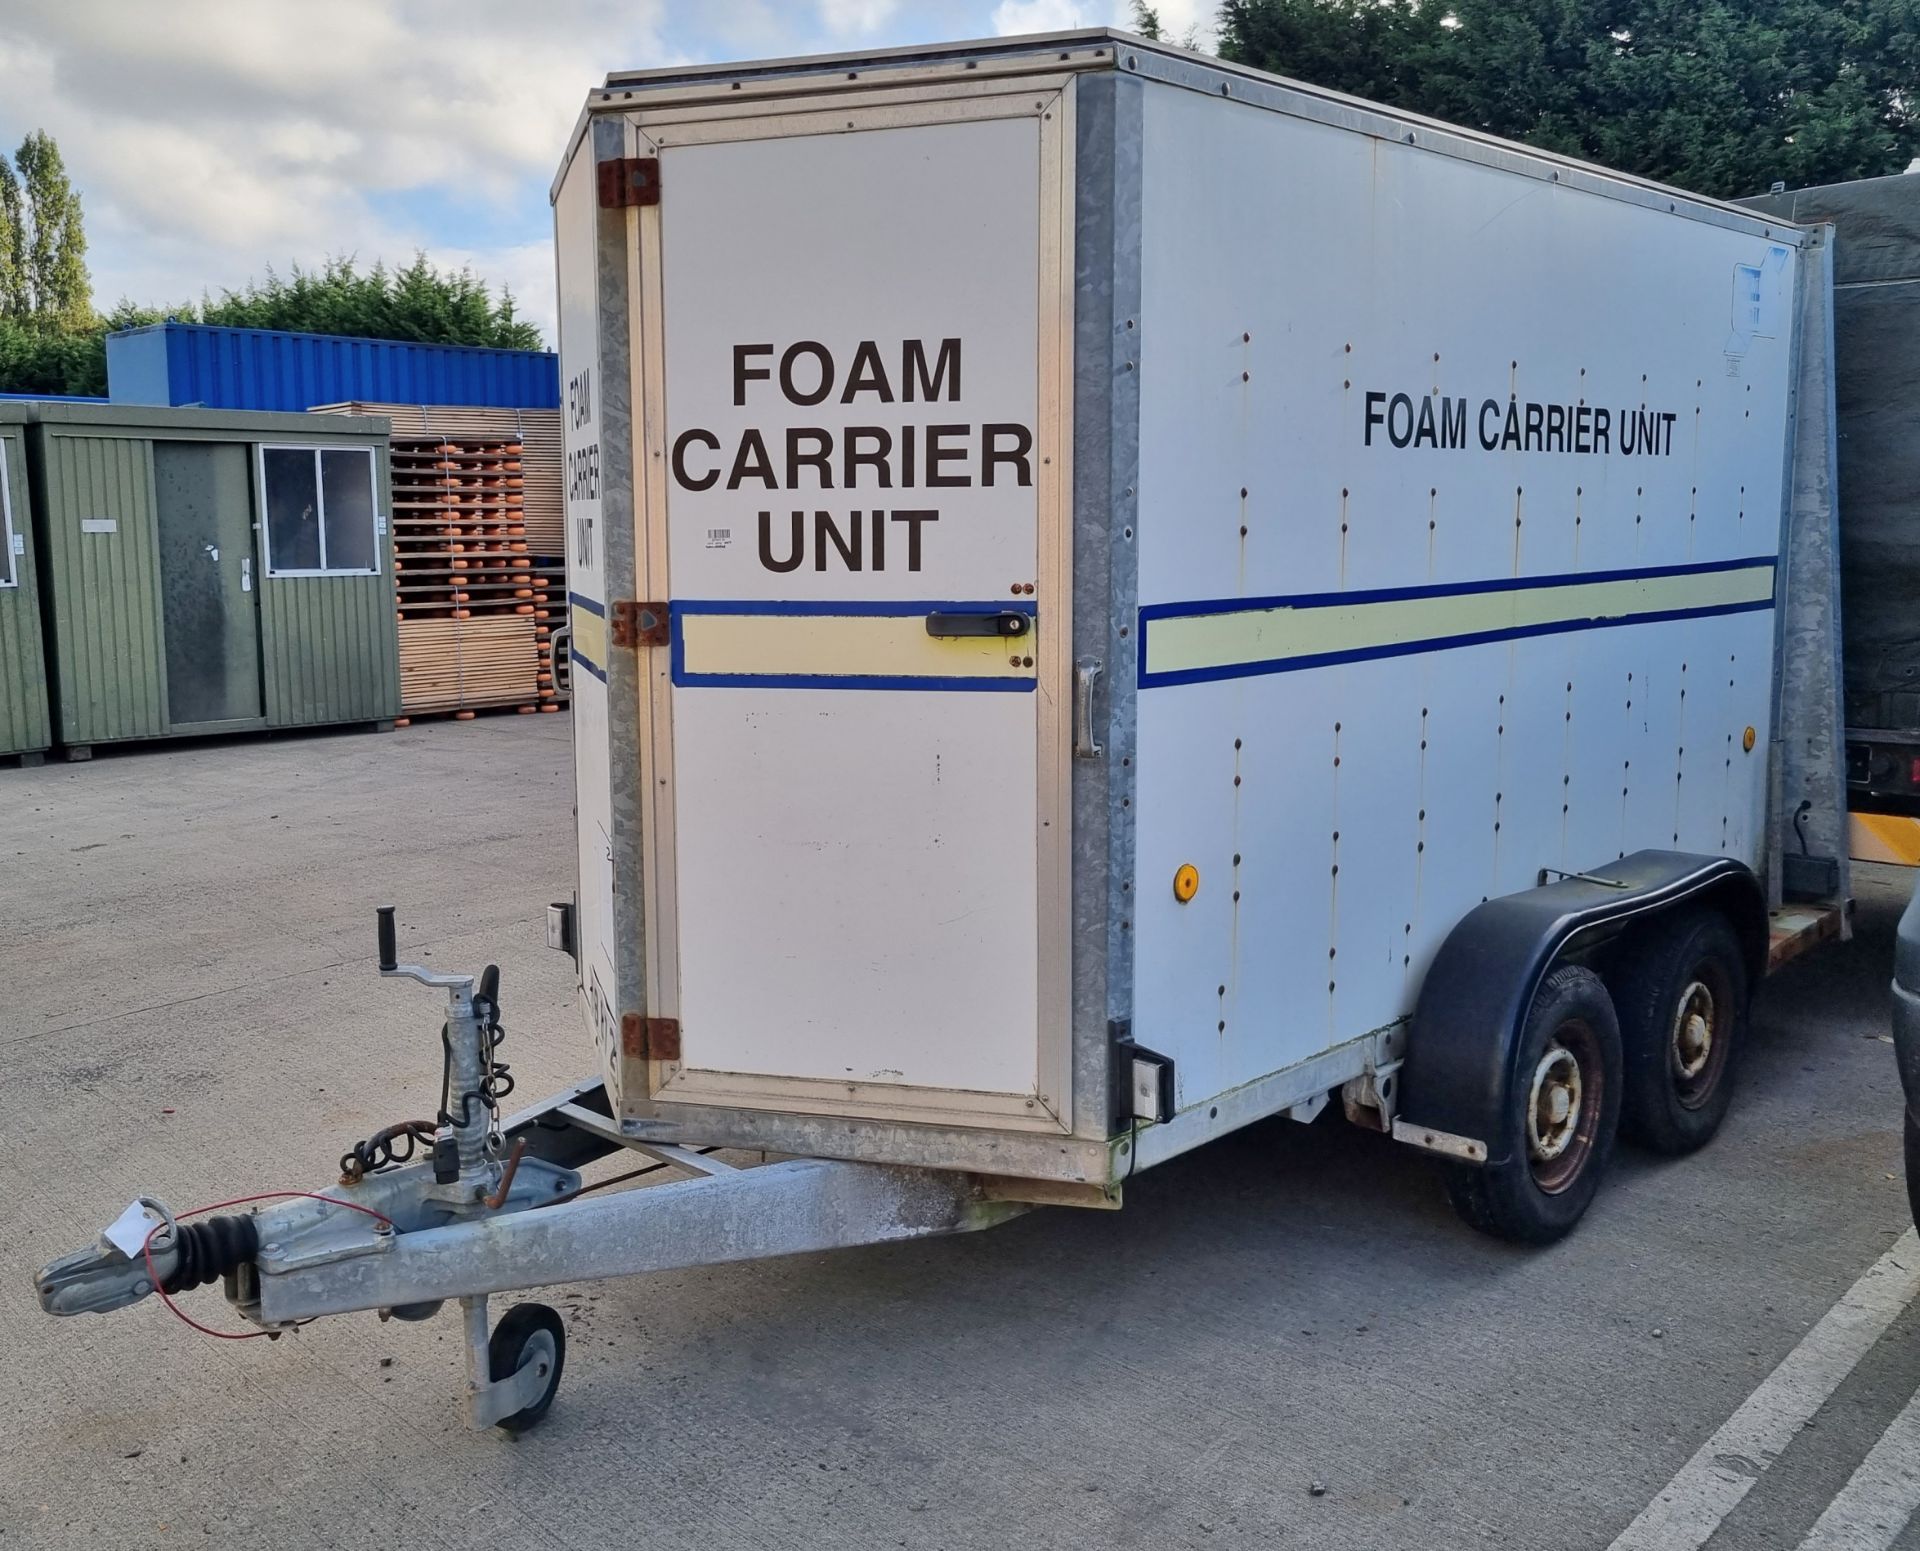 Ifor Williams E*11 twin axle enclosed box trailer - trailer dimensions: 460x200x230cm